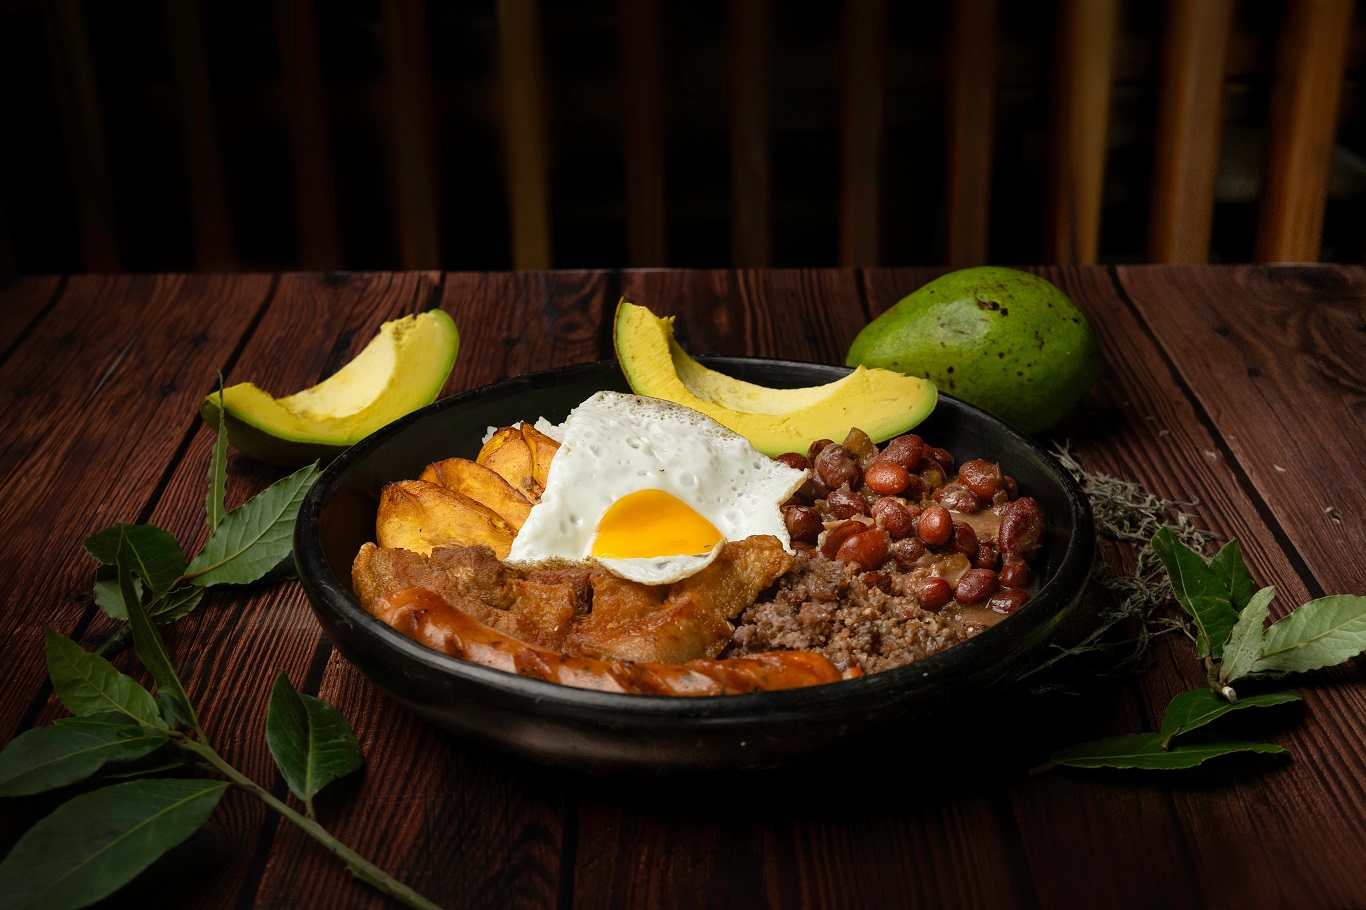 Comida típica colombiana, de antioquia, com feijão, ovos, arroz, torresmo, abacate e chouriço em prato na mesa marrom